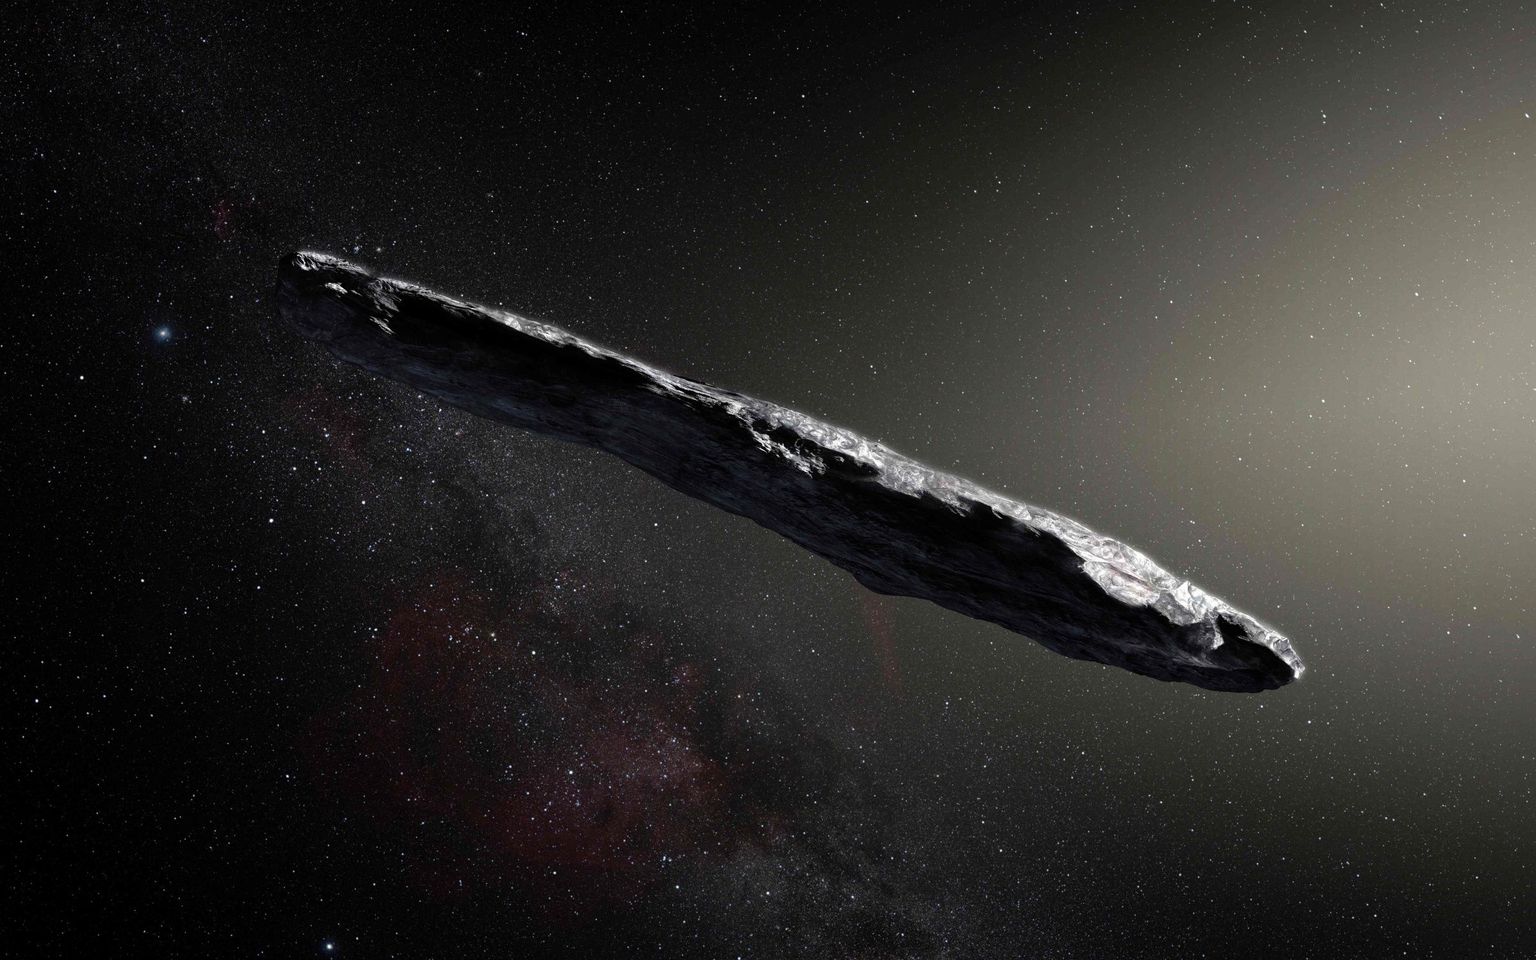 Euroopa Lõunaobservatooriumi kunstniku kujutis esimesest Päikesesüsteemi-välisest asteroidist Oumuamua.